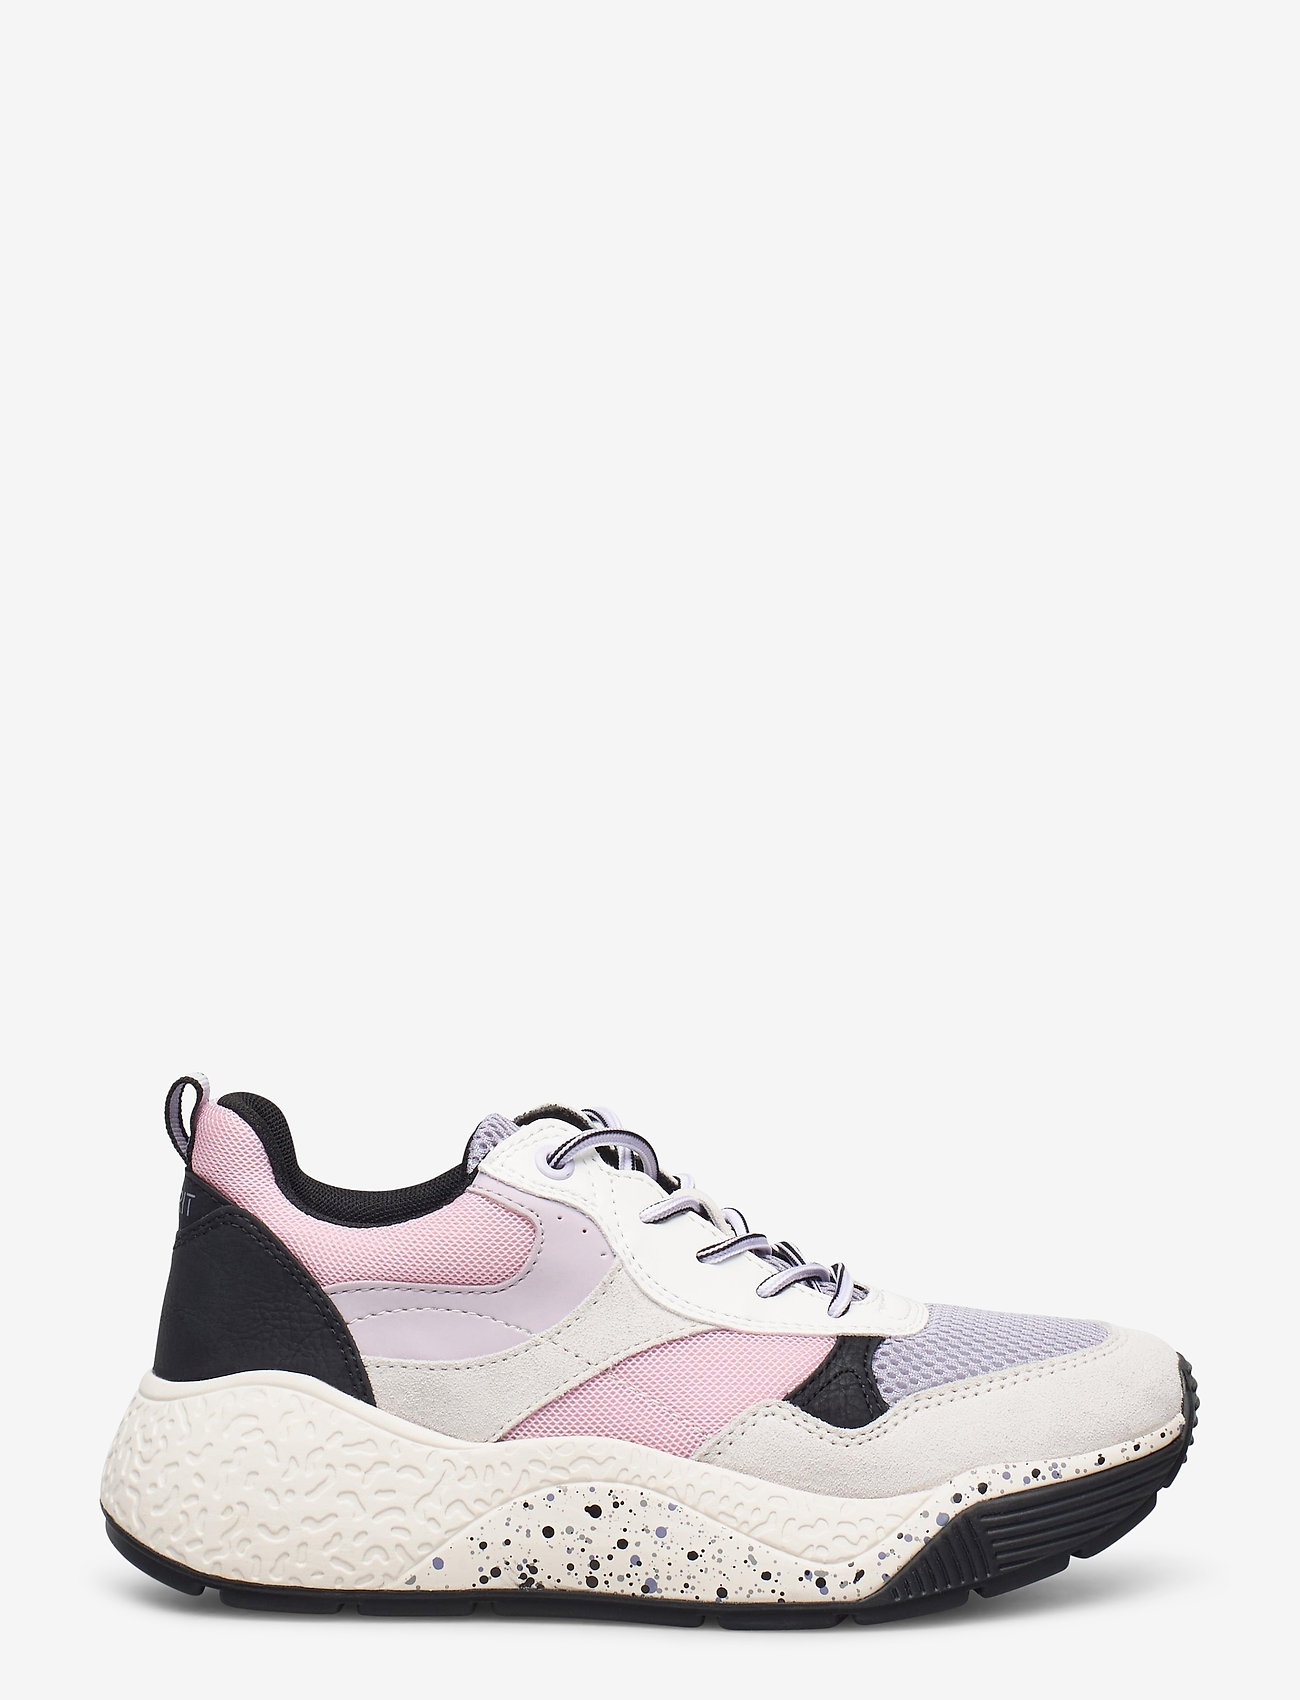 Esprit Casual - Casual Shoes textile - lave sneakers - lavender - 1